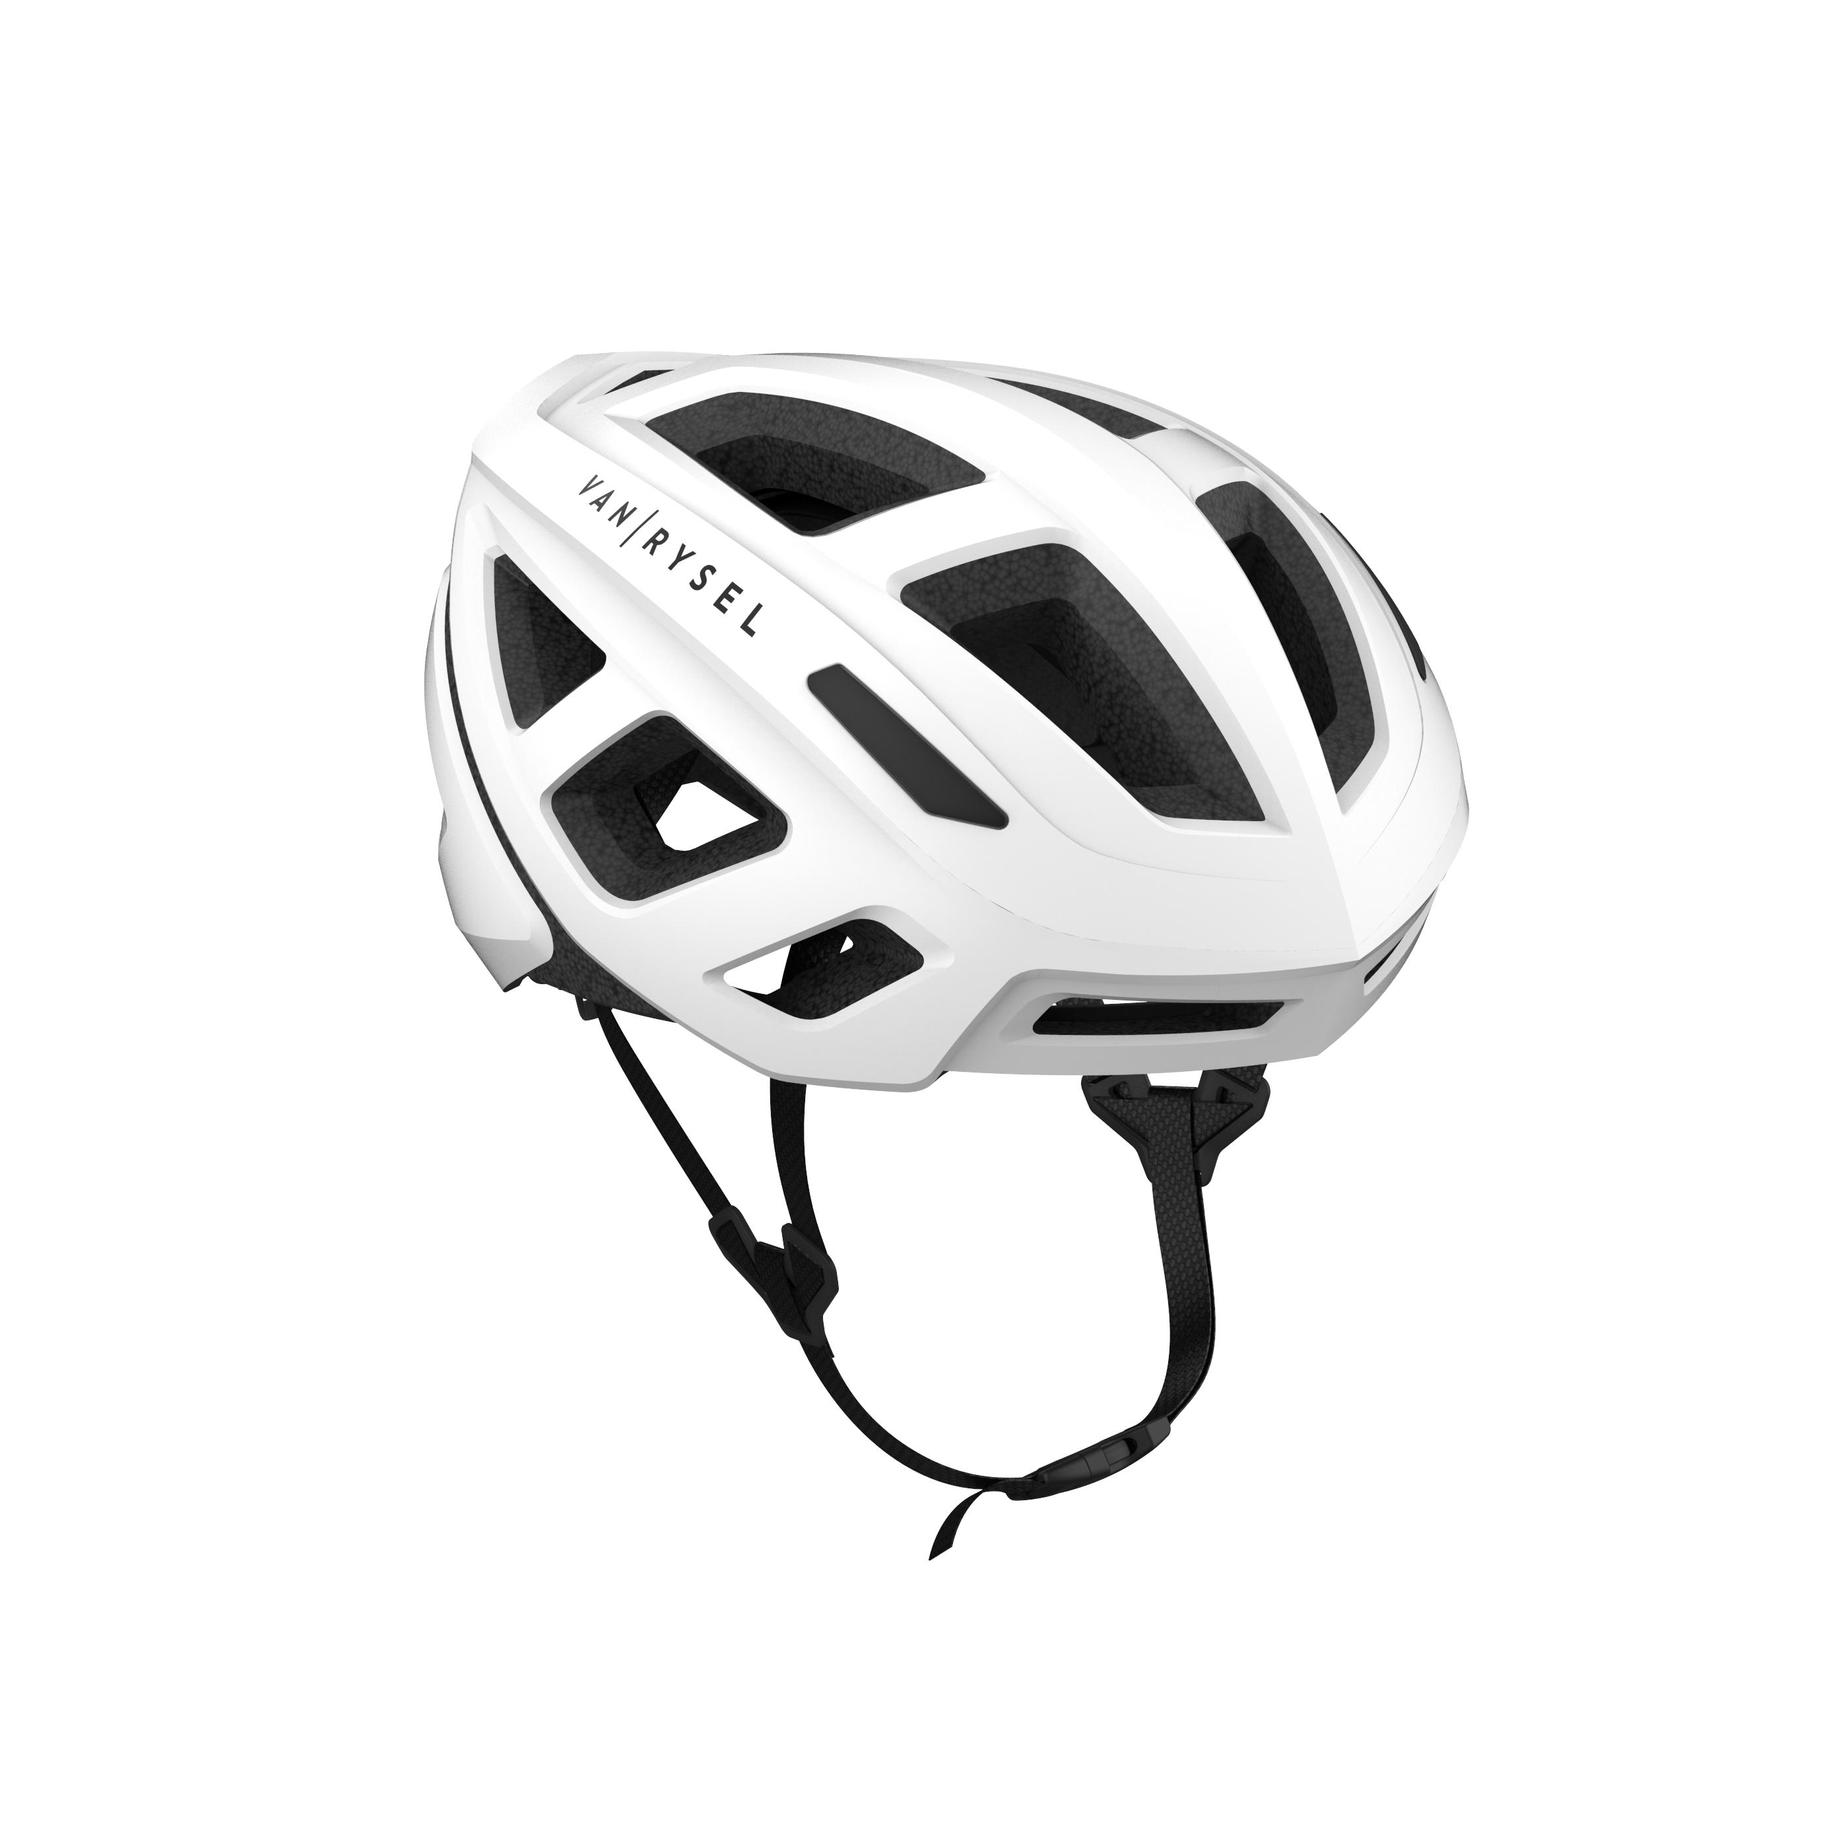 Road Bike Helmet - RoadR 500 White offers at $60 in Decathlon